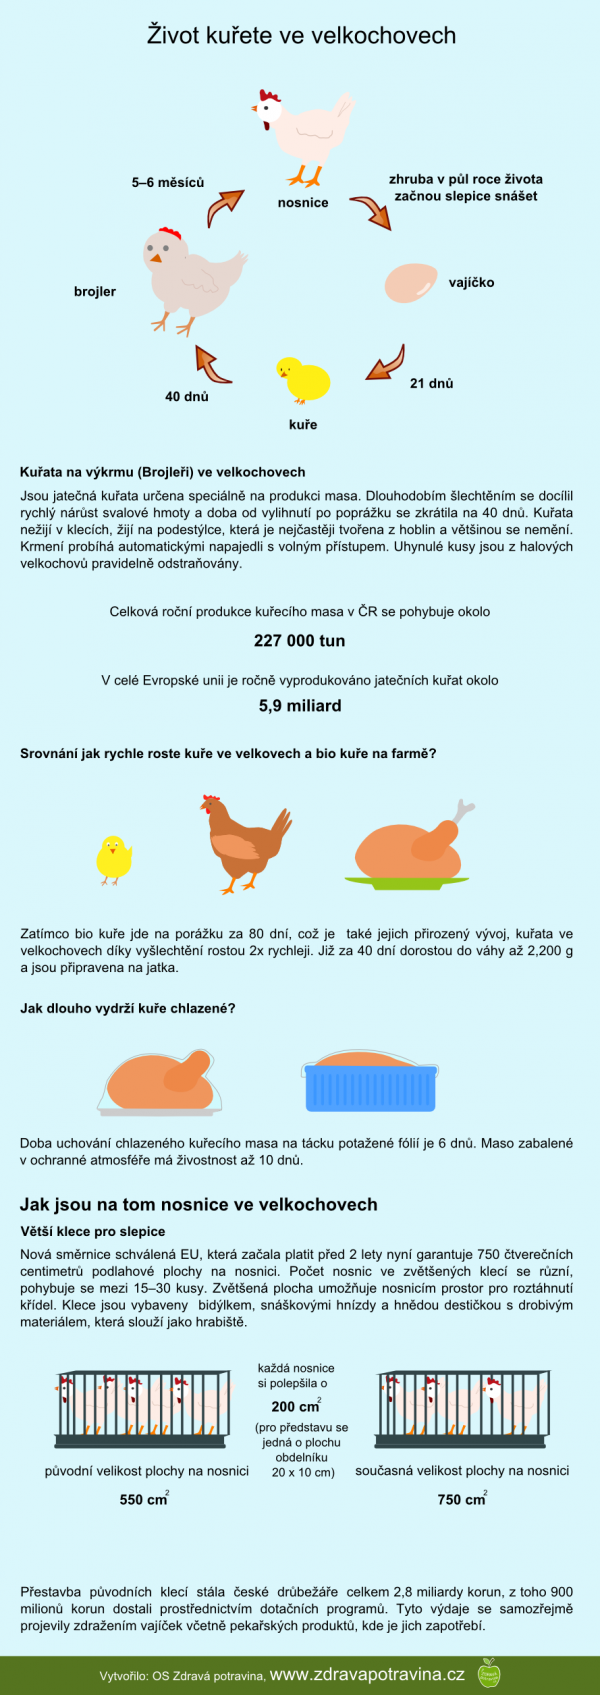 Jak dlouho zije kuře ve velkochovu?